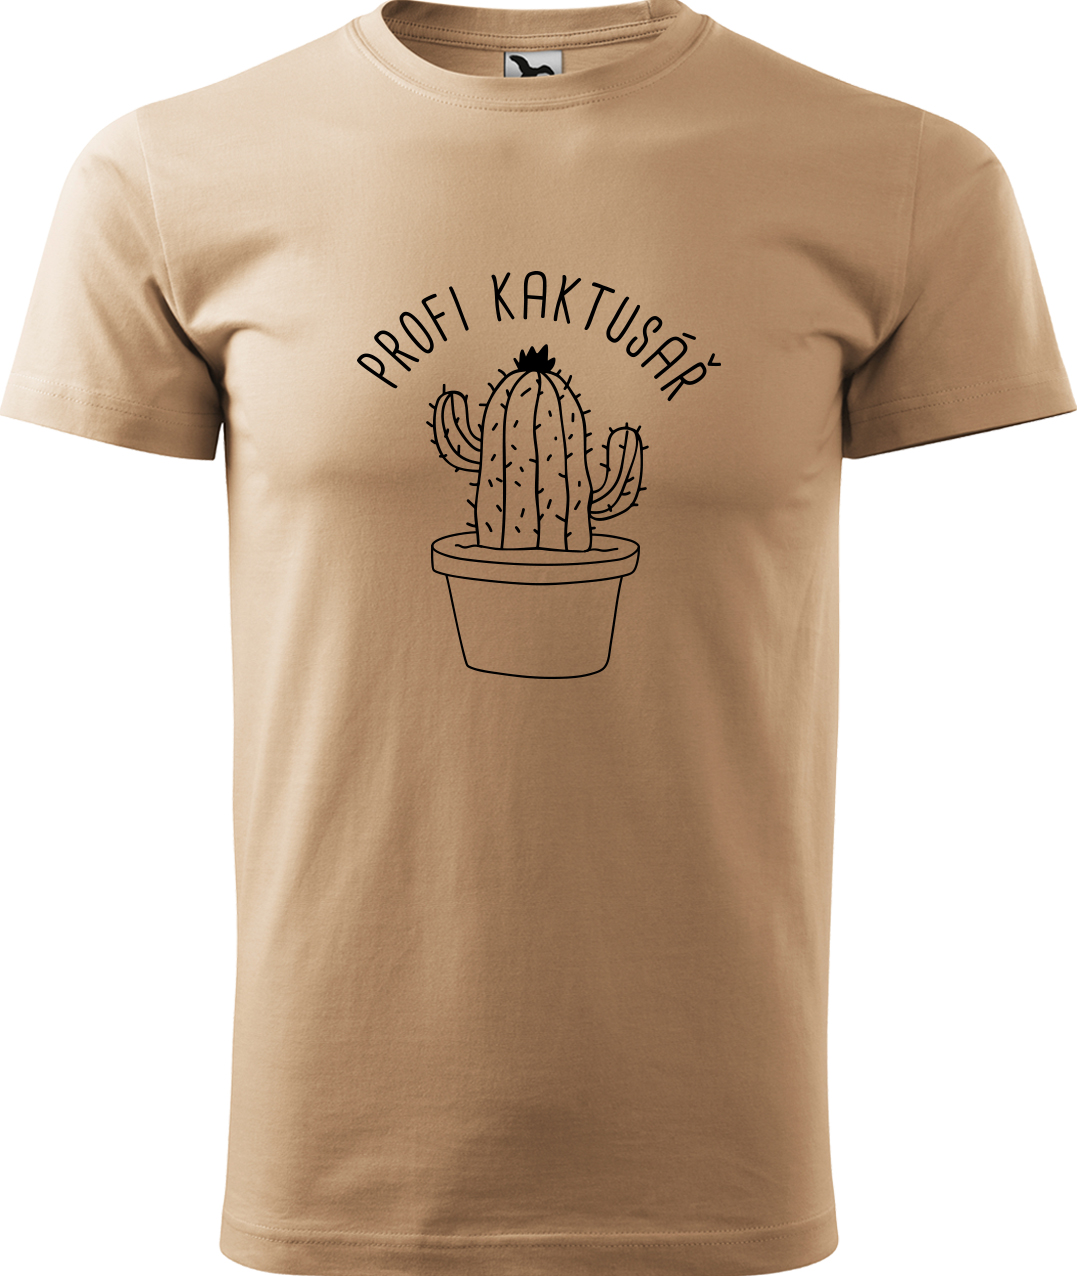 Tričko pro zahradníka - Profi kaktusář Velikost: XL, Barva: Písková (08), Střih: pánský